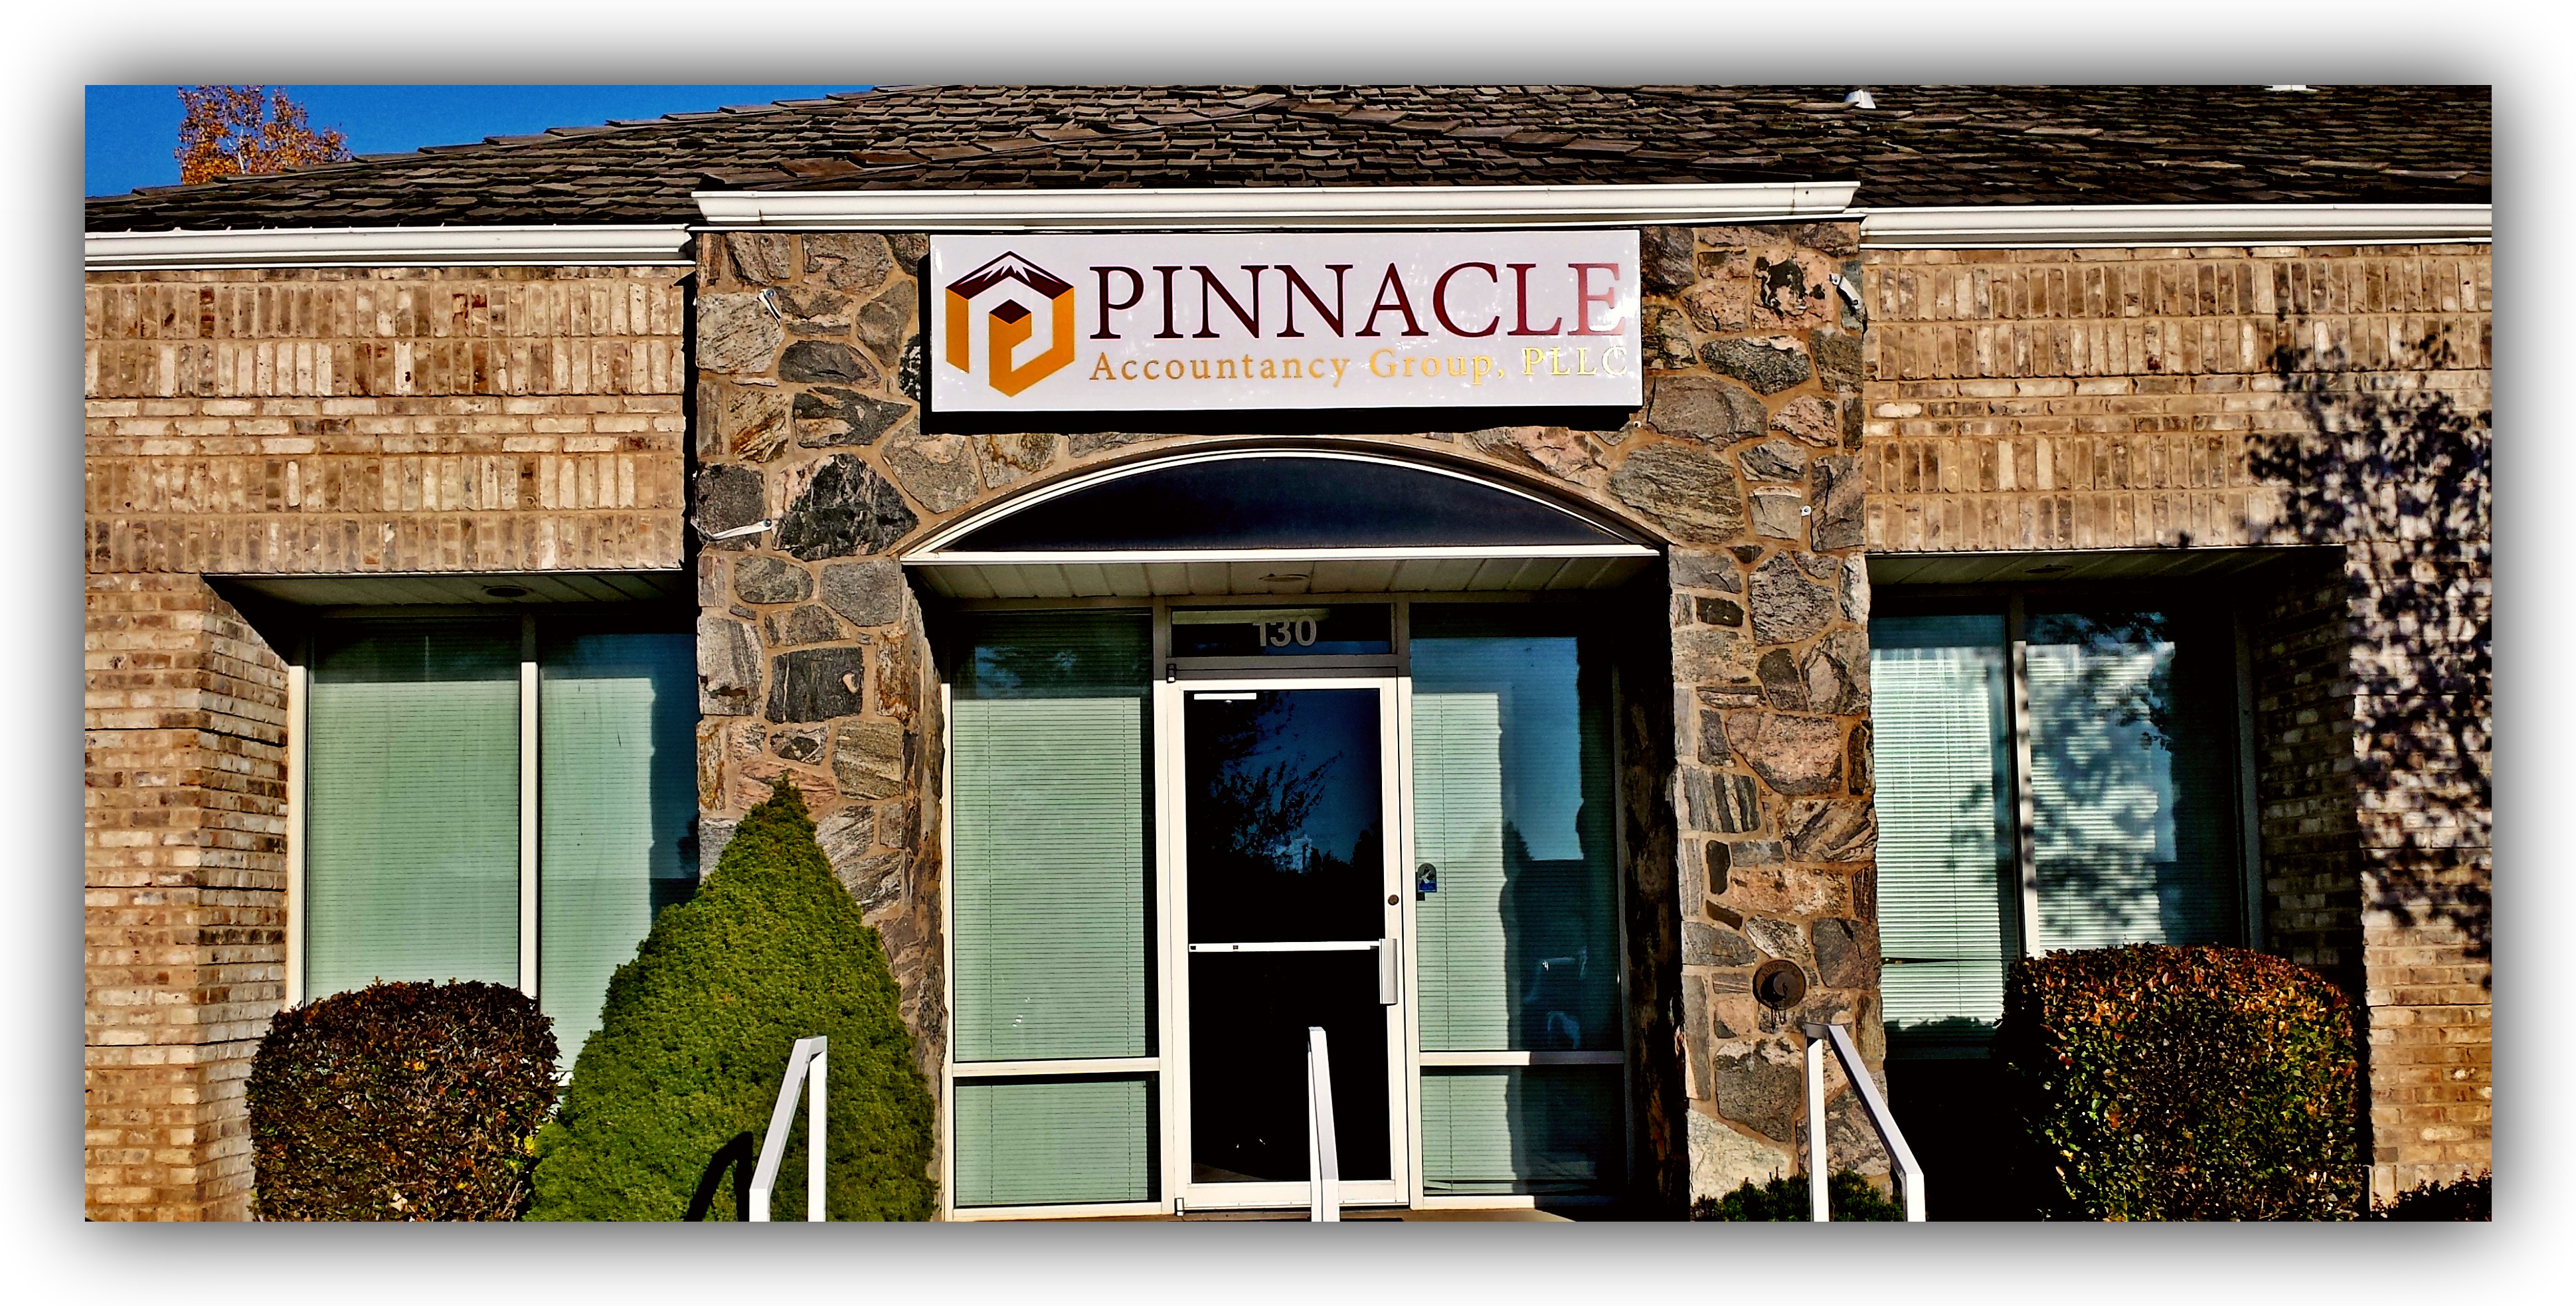 Pinnacle Accountancy Group of Utah North, 1438 U.S. 89 Alternate #120, or, 1438 North Highway 89 #120, Farmington Utah 84025